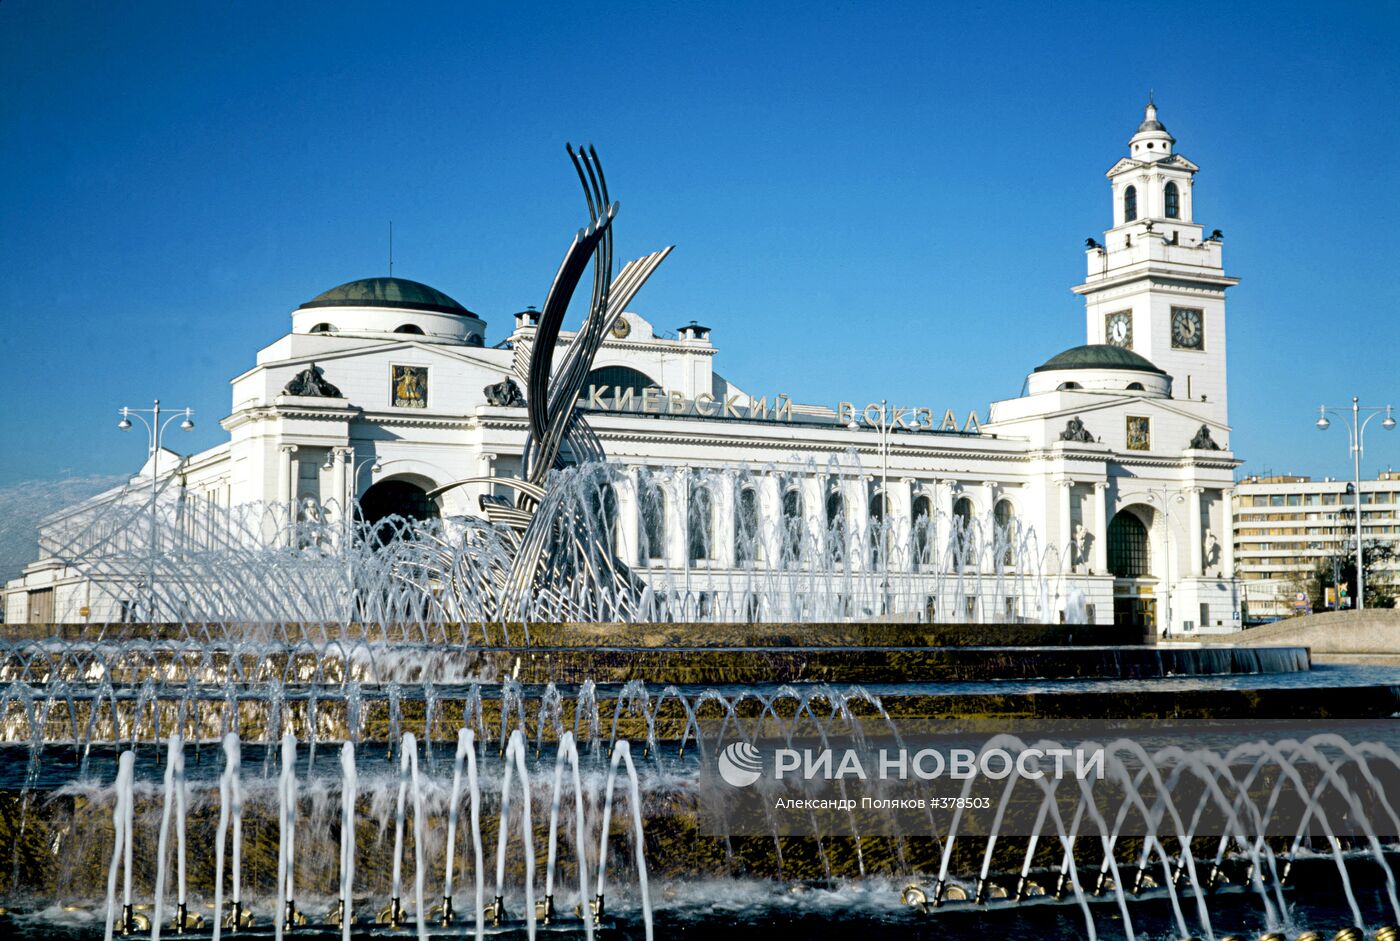 Фонтан и скульптура "Похищение Европы" в Москве